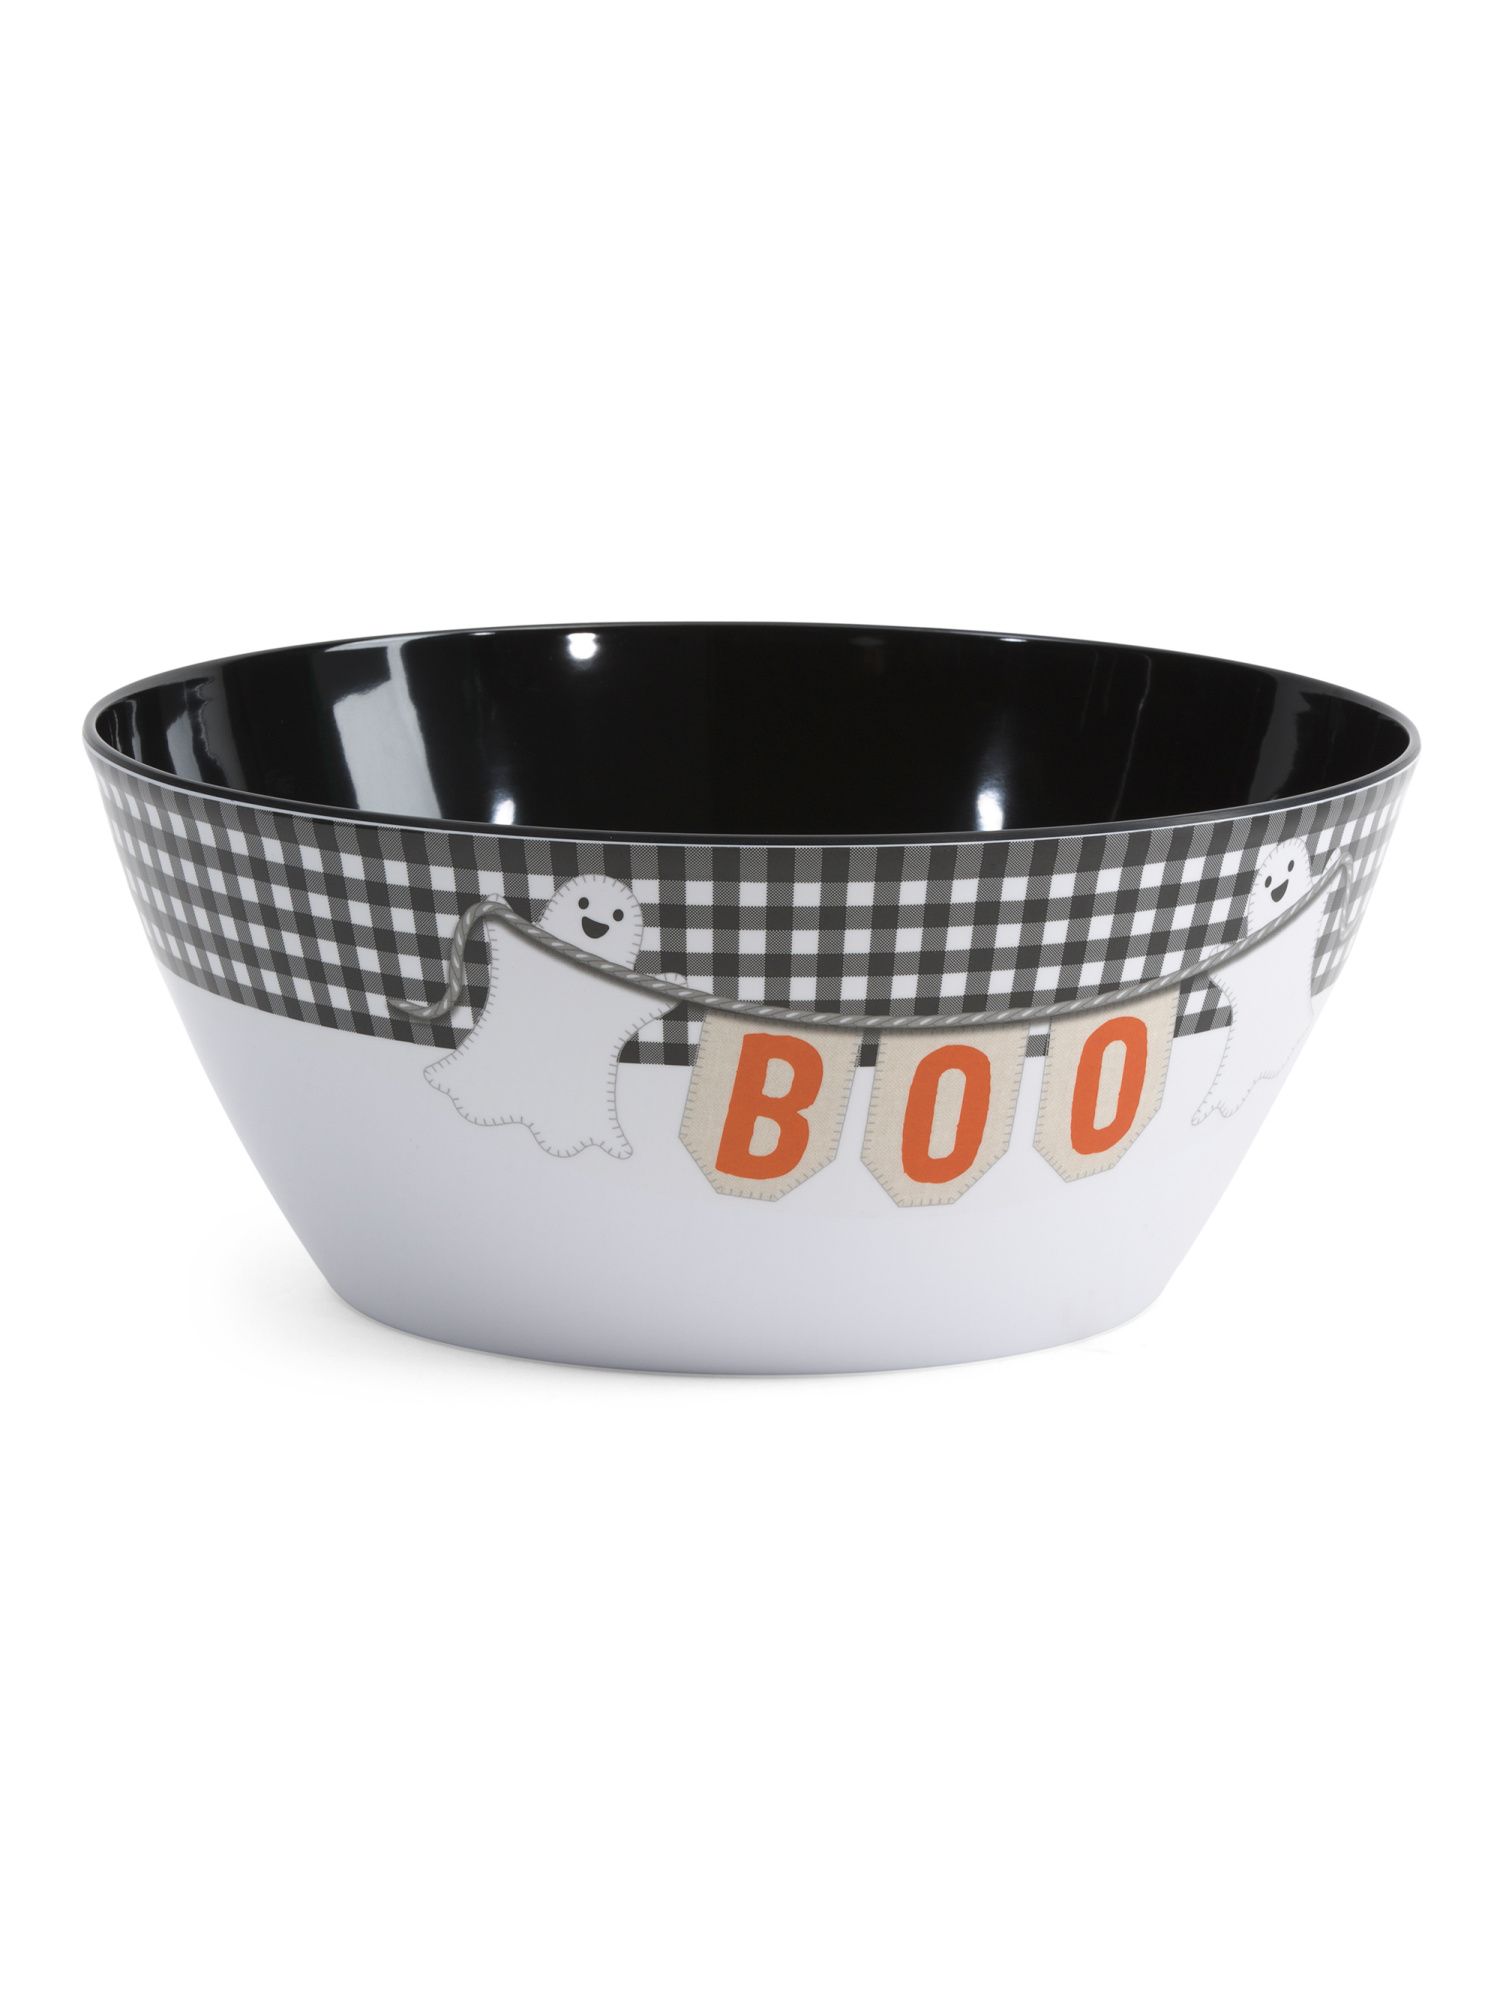 Boo Ghosts Melamine Candy Bowl | TJ Maxx